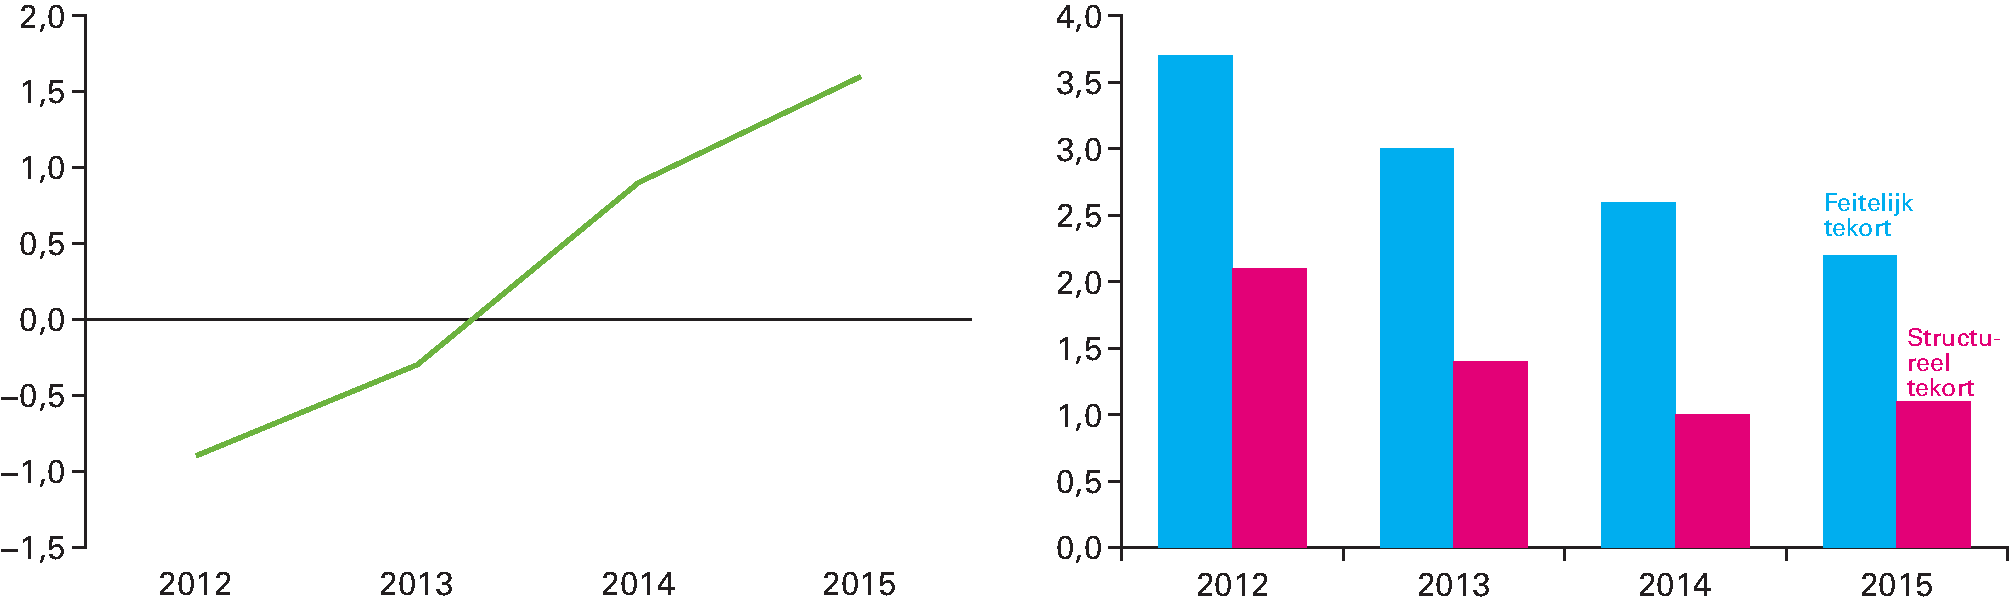 Figuur 1.3.1 Ontwikkeling economische groei (links; in procenten) en feitelijk tekort en structureel tekort (rechts; percentage van bbp) in de eurozone